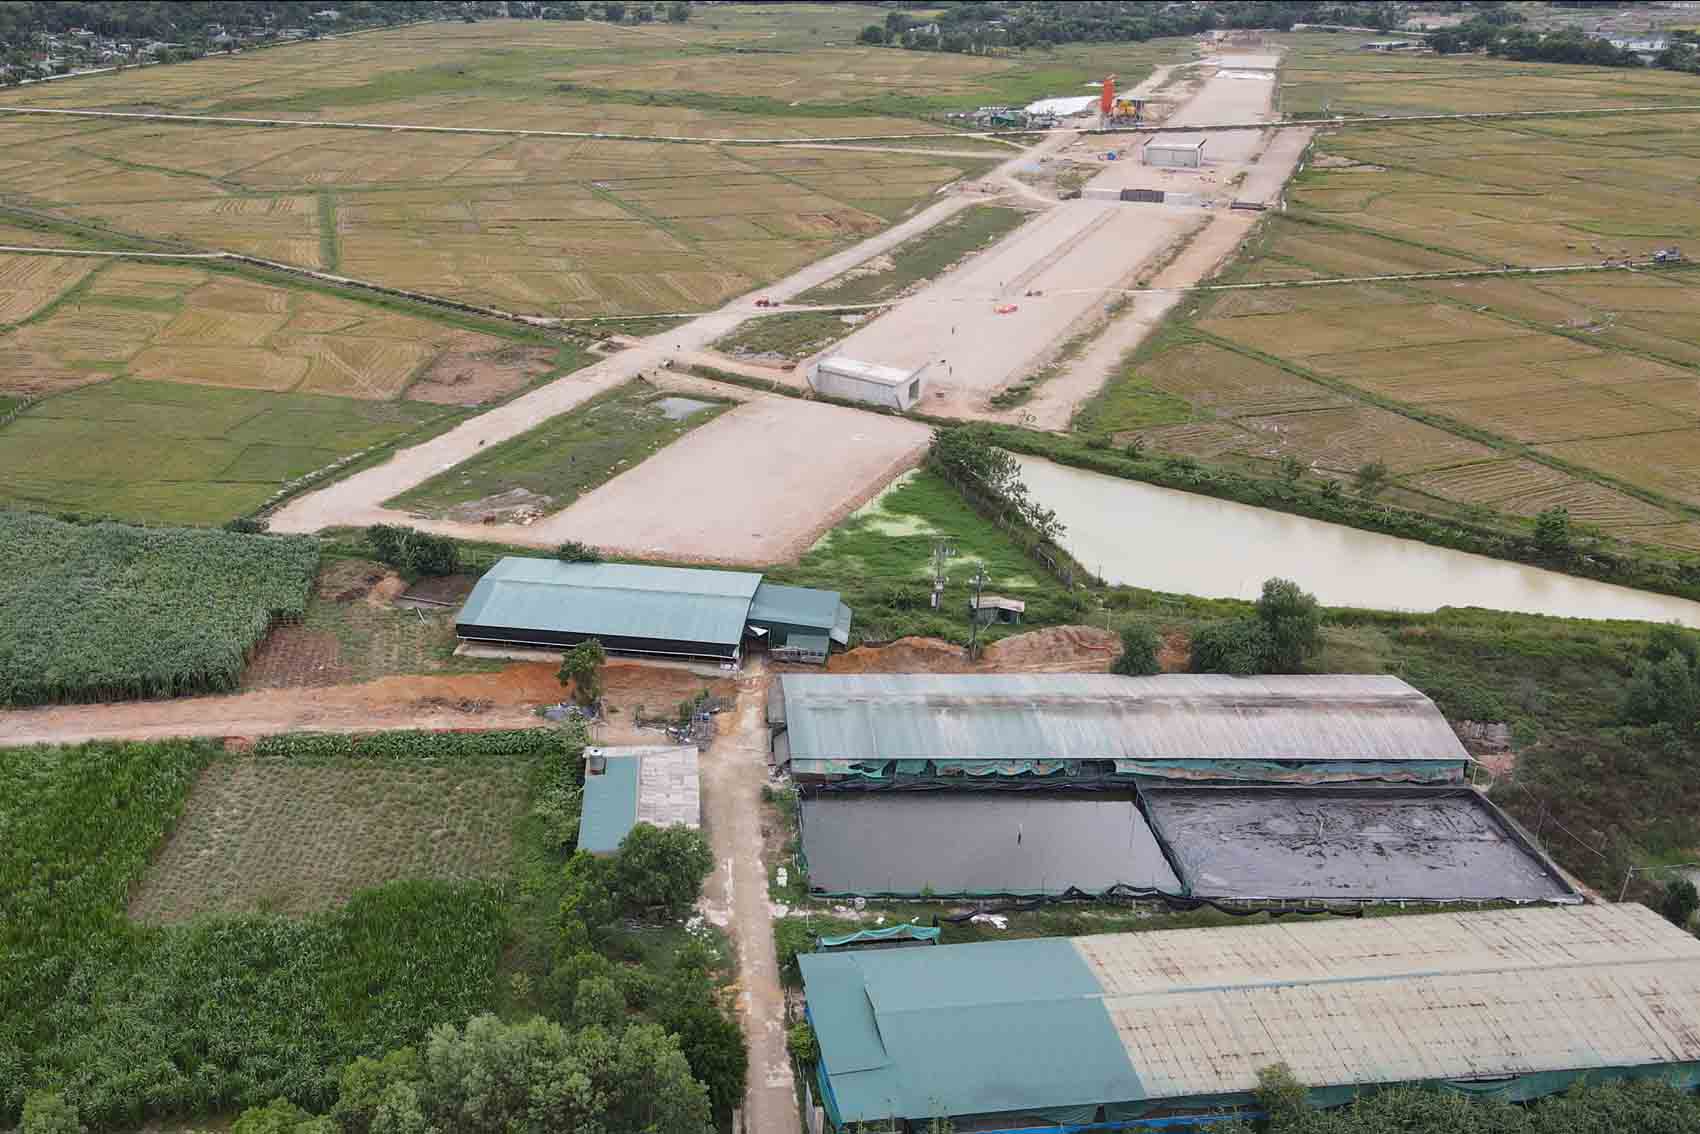 Trại lợn ở xã Việt Tiến đang vướng mắc cần giải phóng để bàn giao cho thi công cao tốc Bắc - Nam. Ảnh: Trần Tuấn.